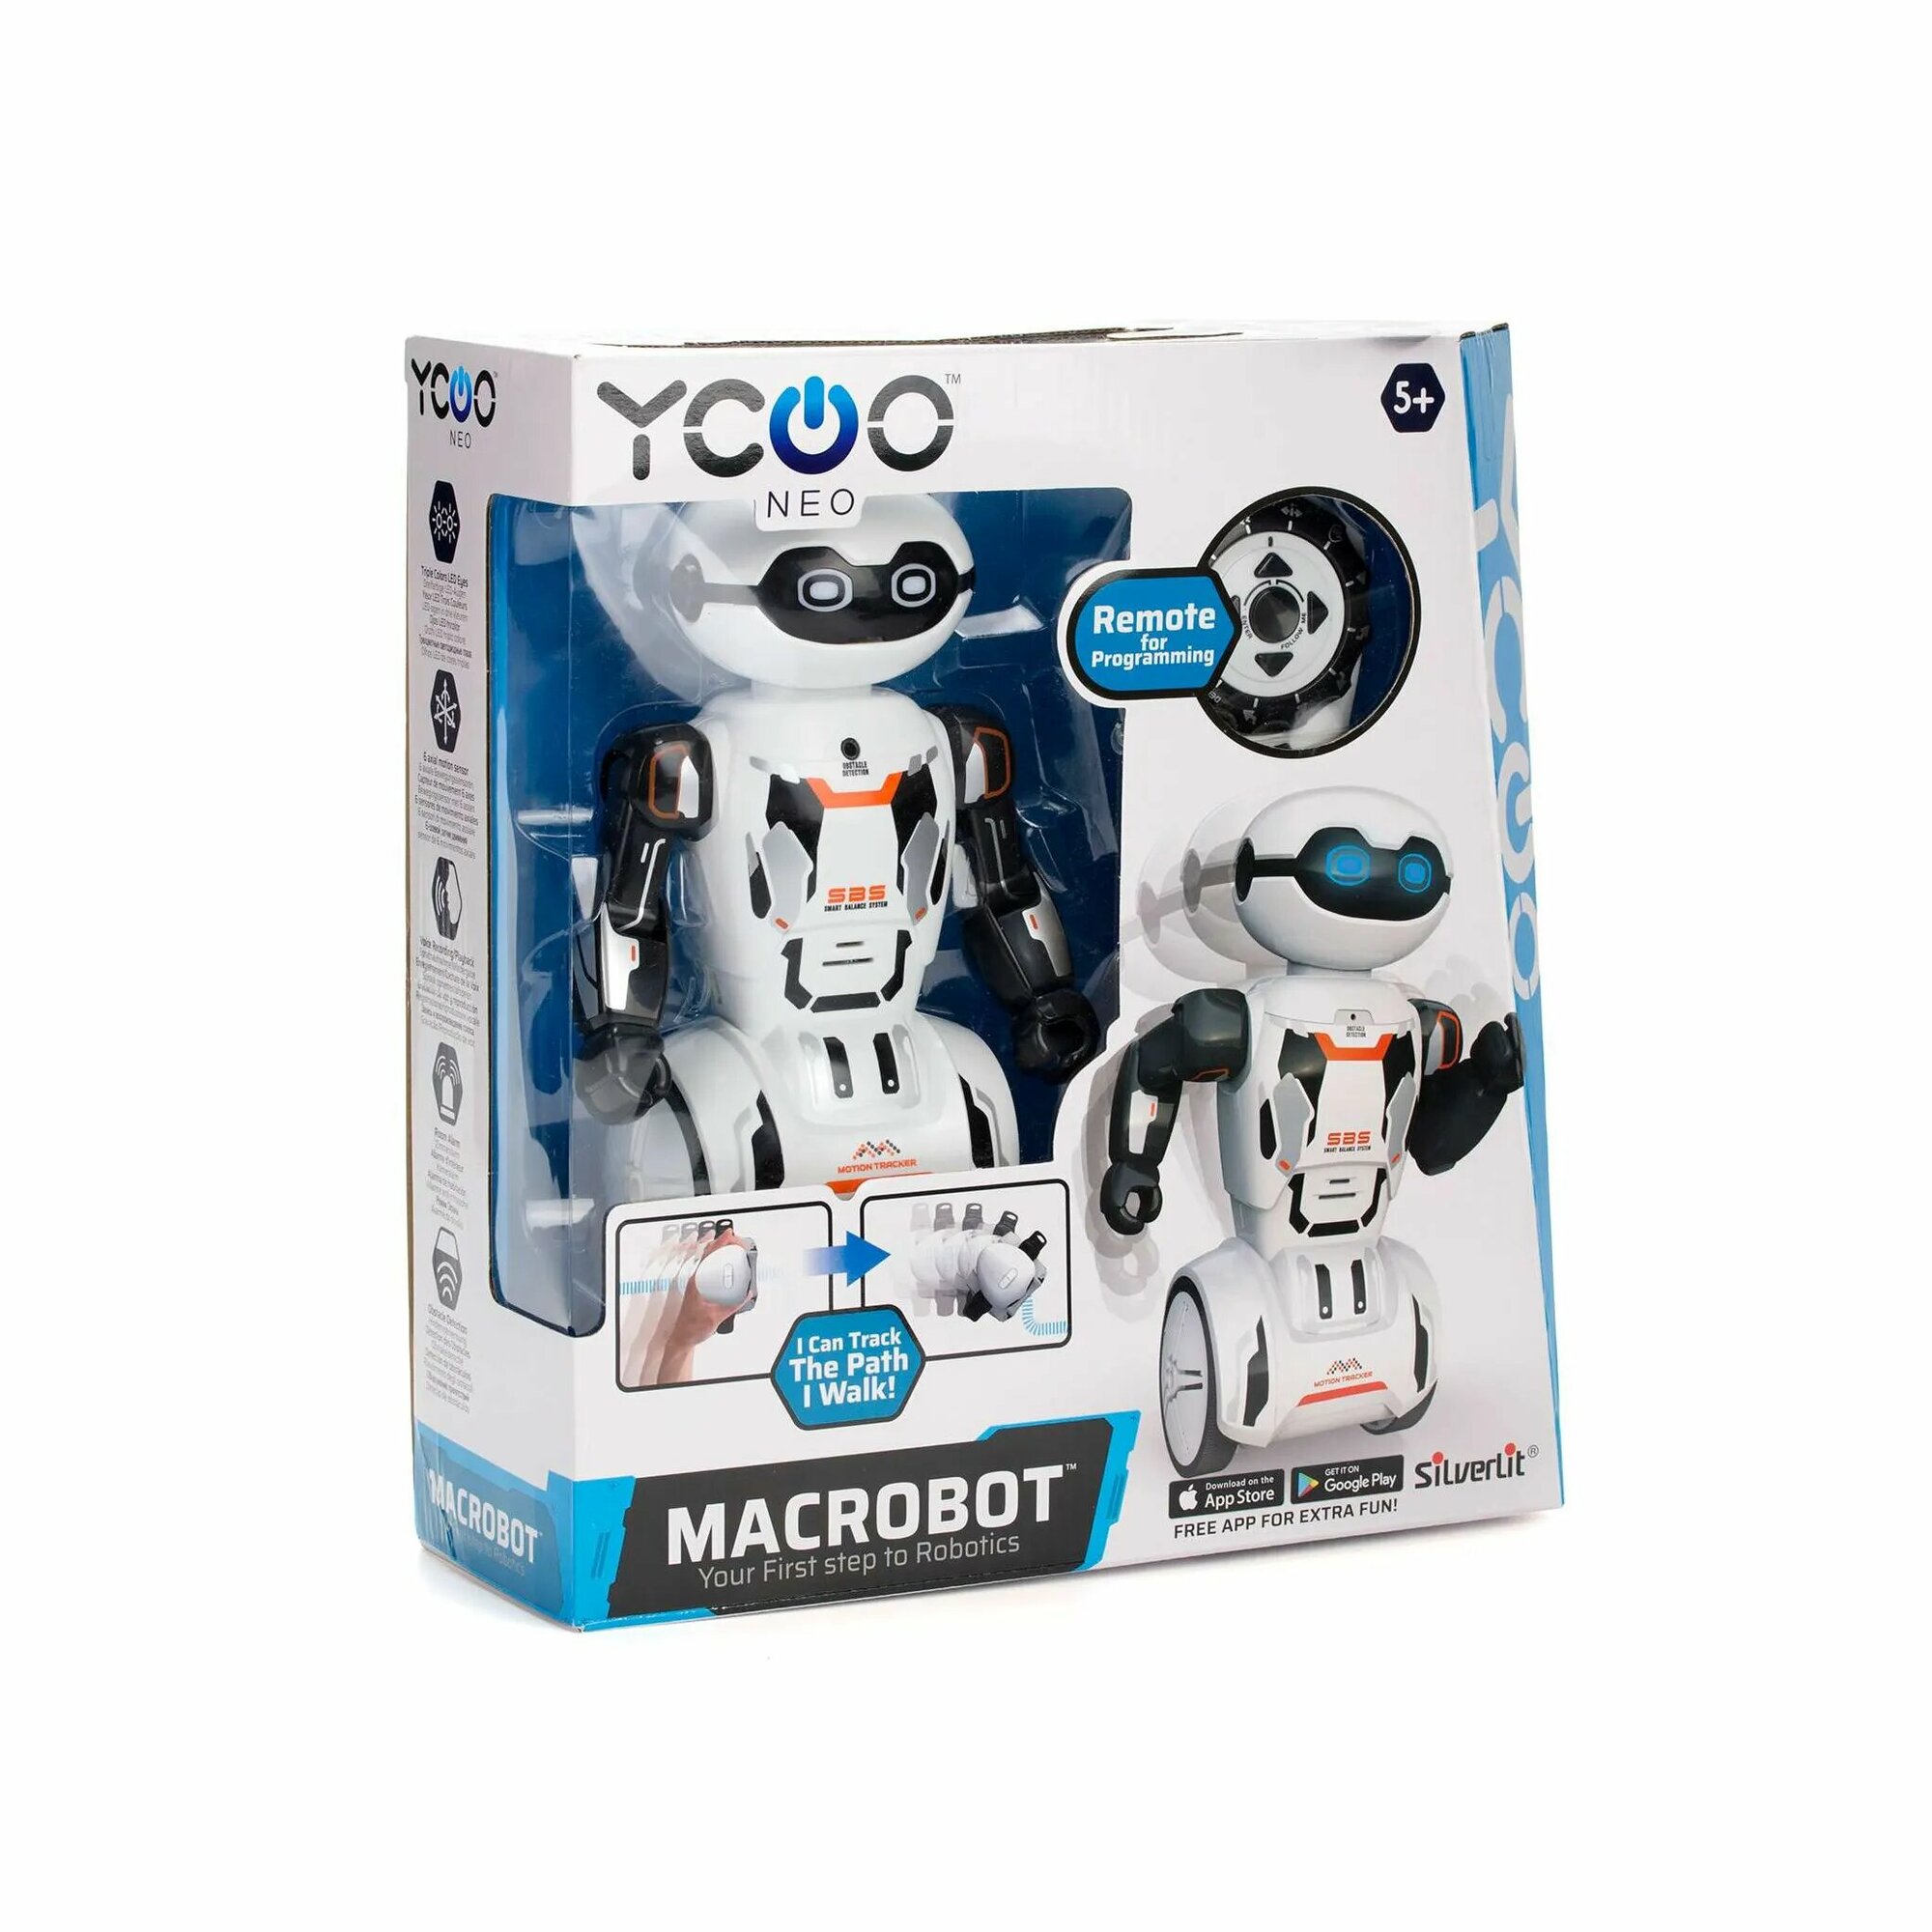 Робот Макробот YCOO - фото №8